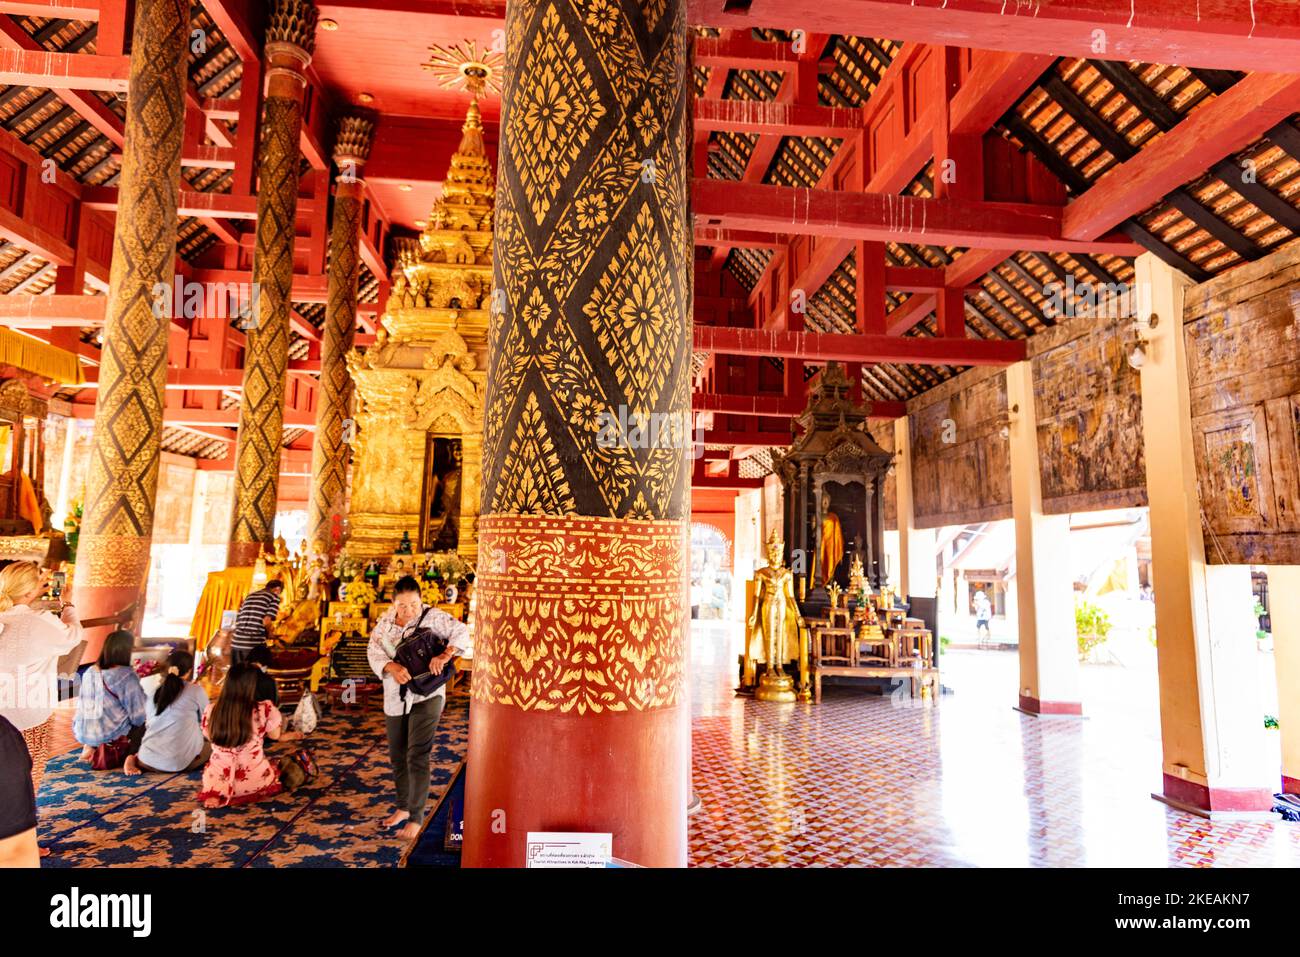 Templo del Buda Esmeralda (Wat Phra Kaew): el templo budista más famoso y vérado de todo Tailandia tiene esta distinción p Banque D'Images